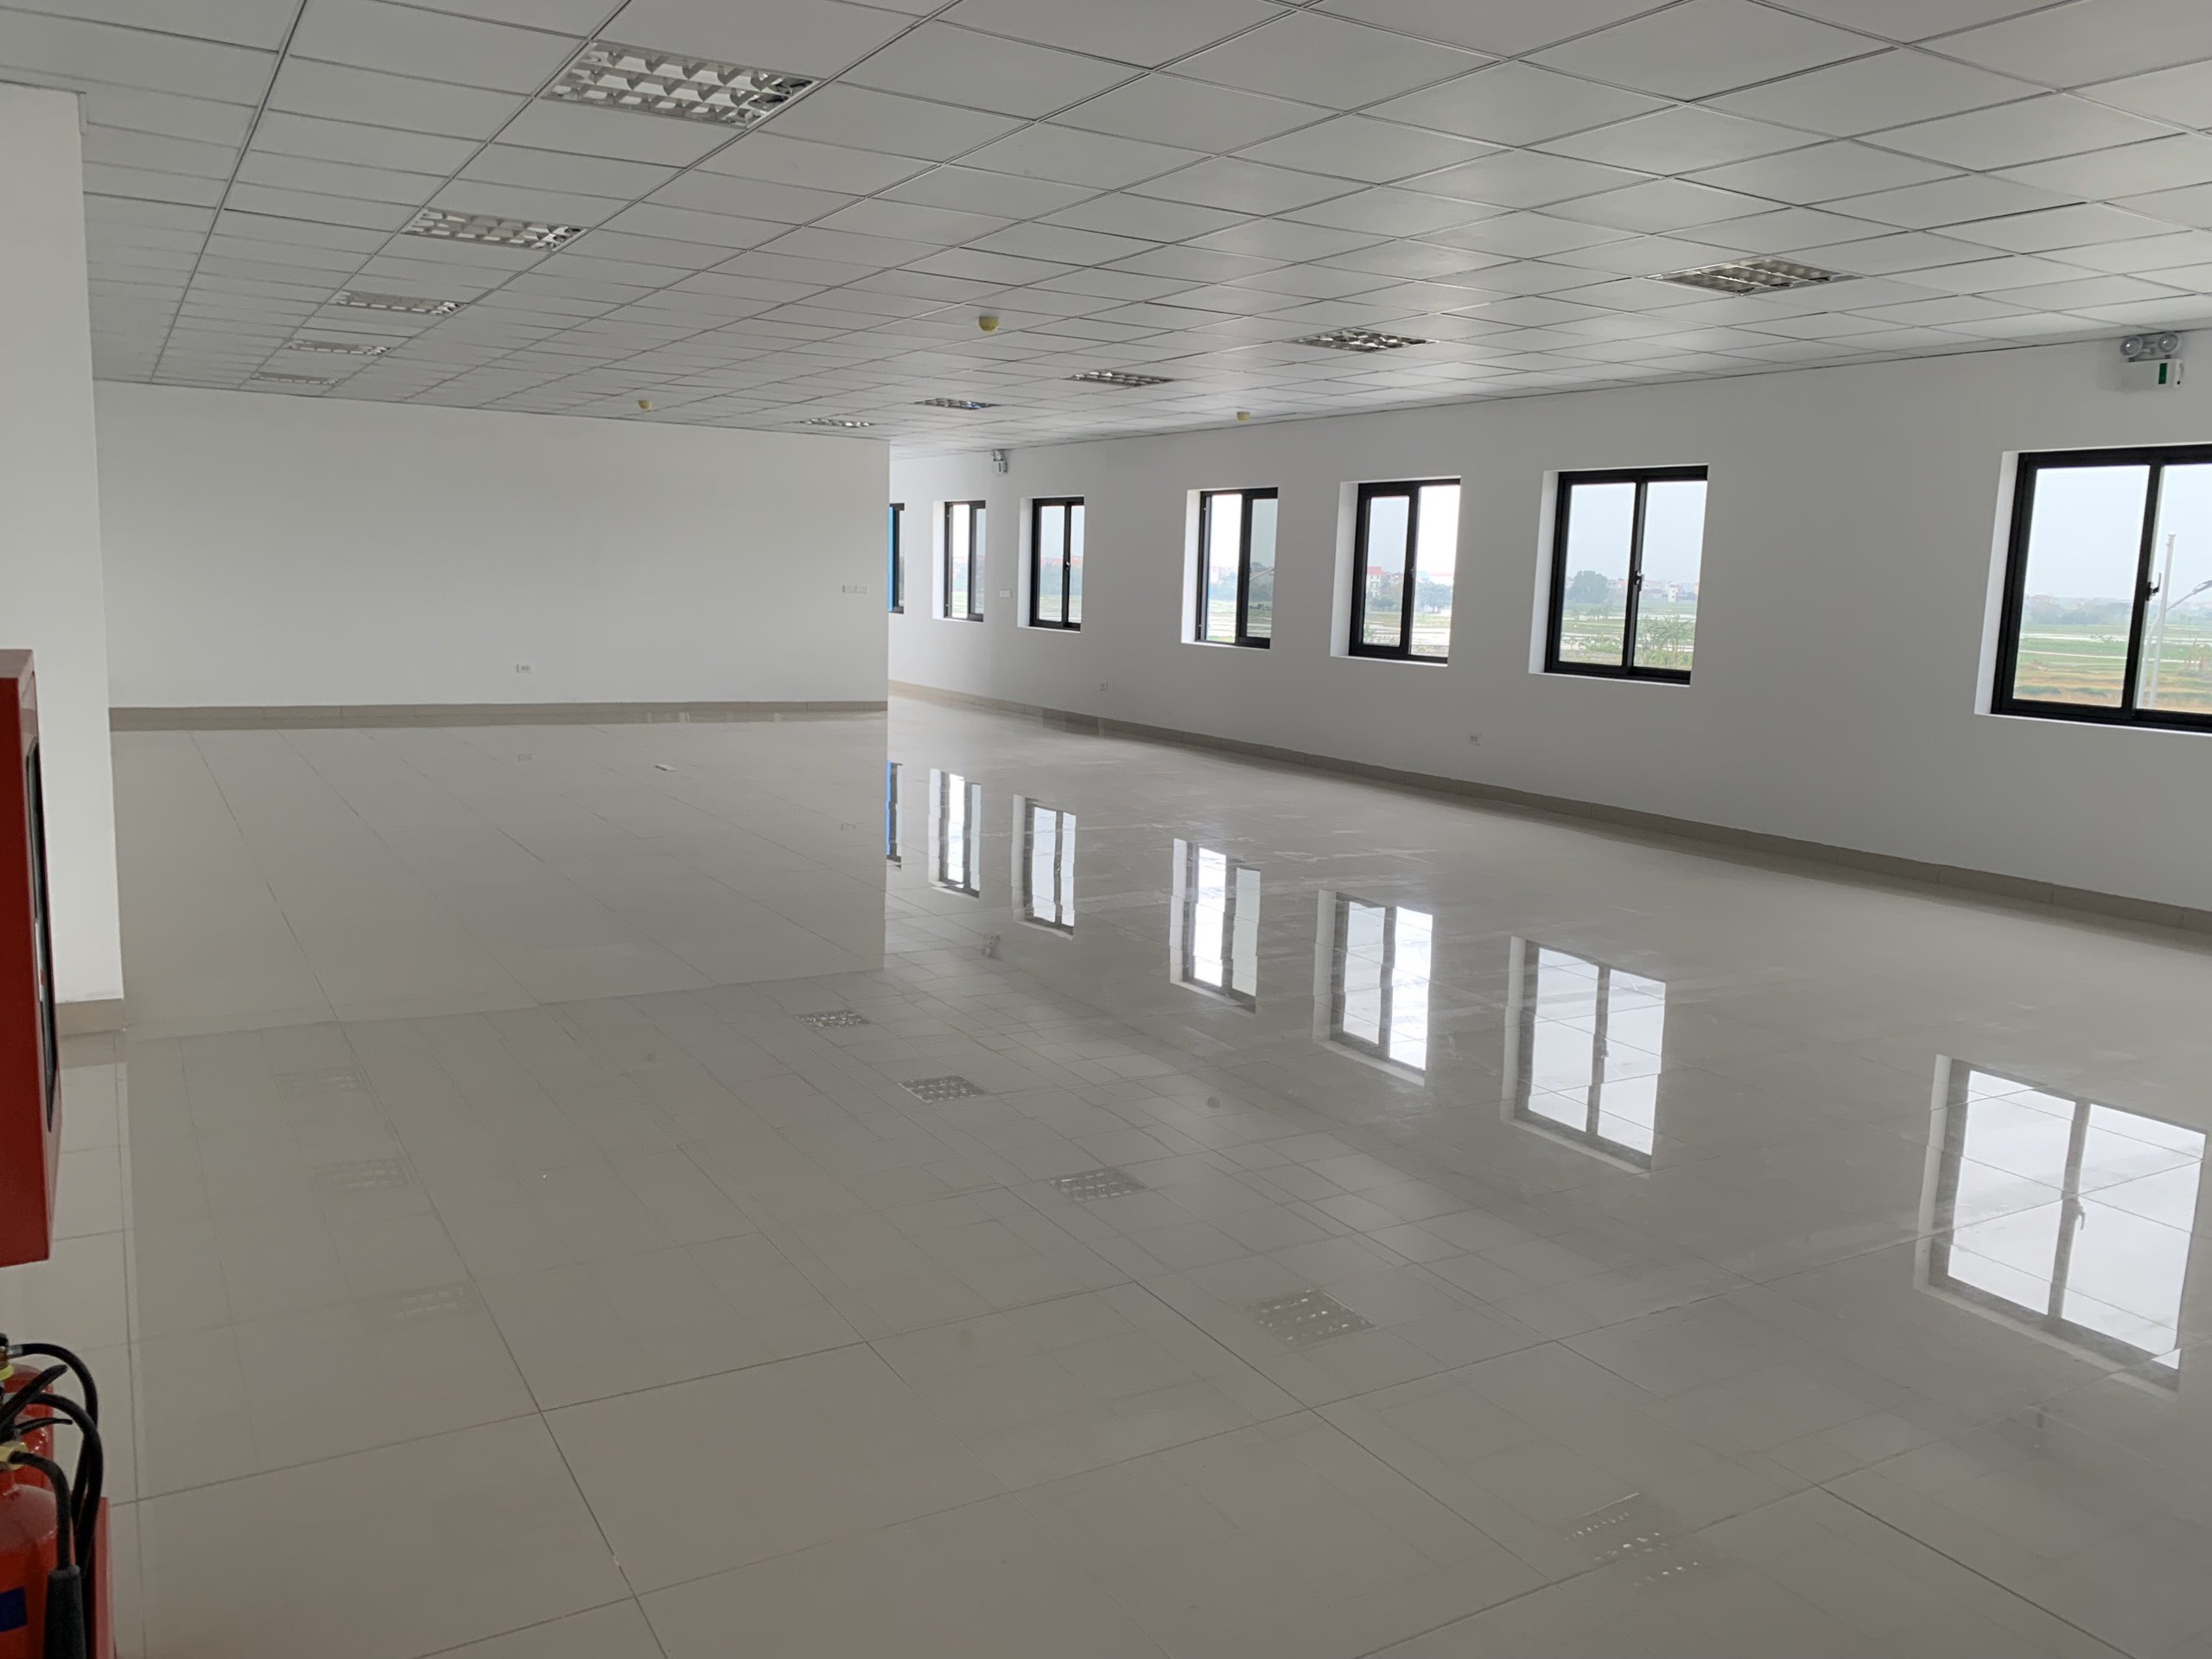 Cho thuê nhà xưởng tại Bắc Giang, đủ điều kiện EPE, xưởng mới giá chỉ 3.5$/m2 . LH 0988 457 392 3